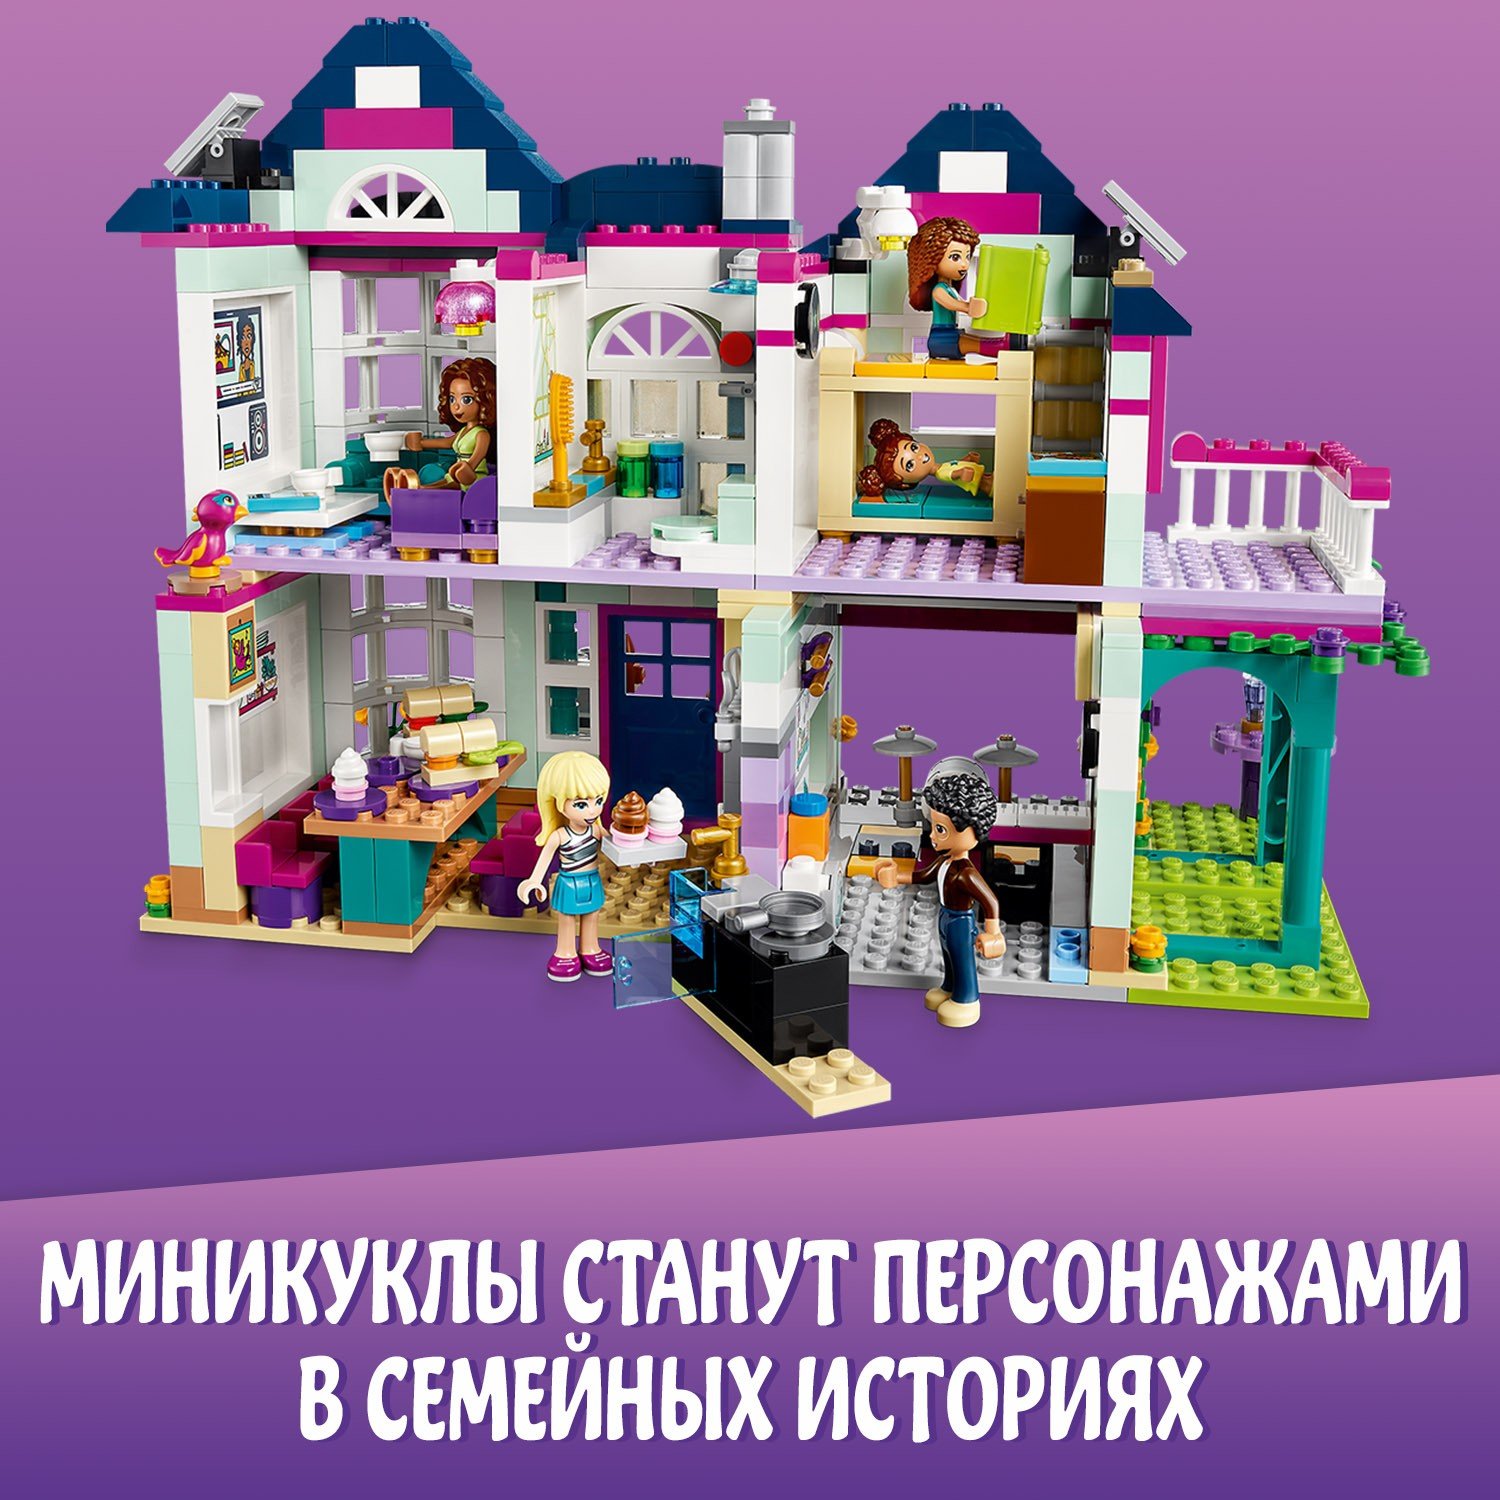 Lego Friends 41449 Дом семьи Андреа